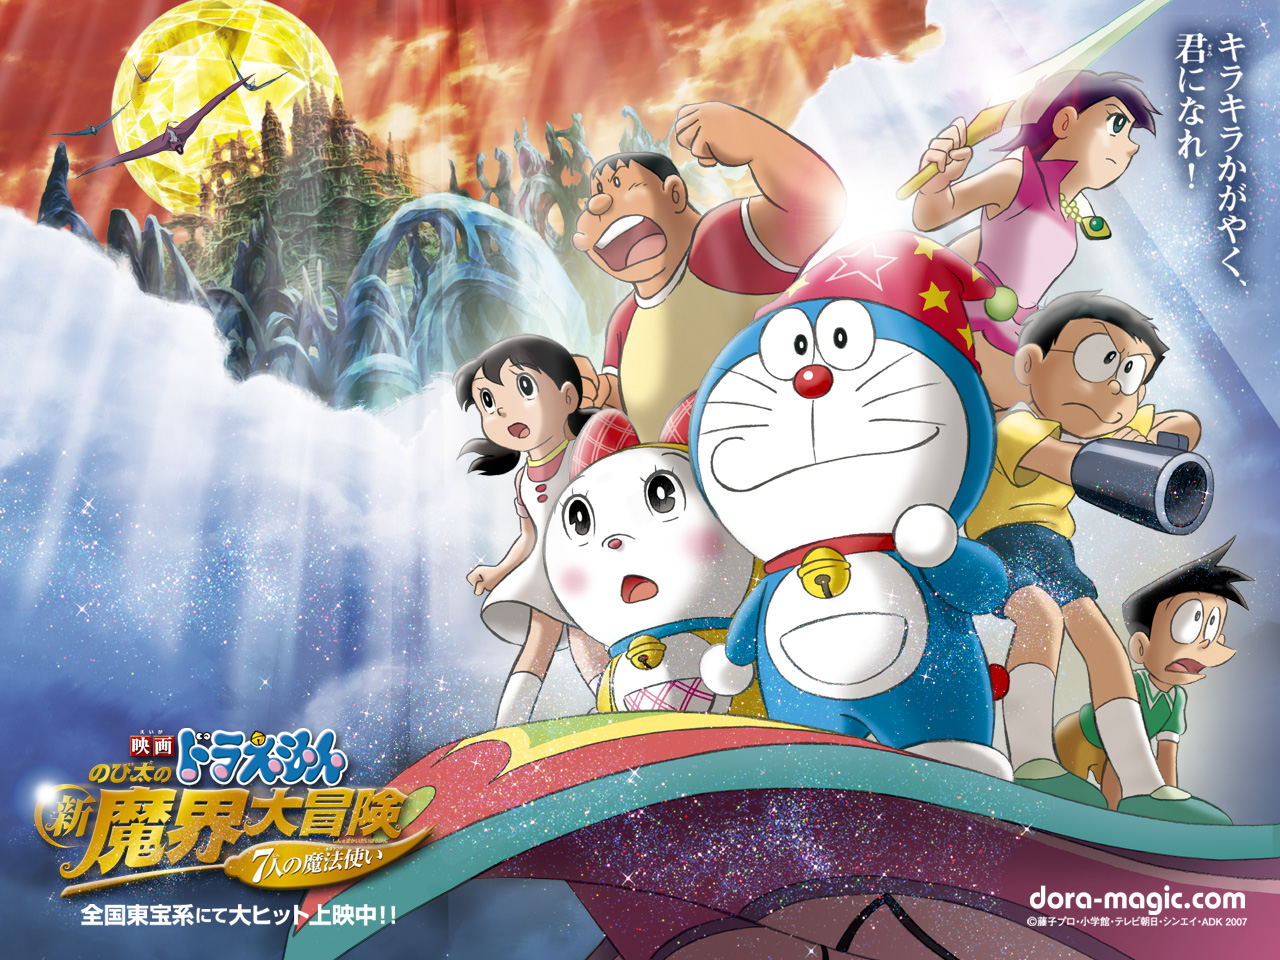 Free download Pics Photos Doraemon Wallpaper Hd 1920x1080 for your Desktop  Mobile  Tablet  Explore 76 Wallpapers Of Doraemon  Doraemon 3d Wallpaper  2015 Wallpapers Doraemon Doraemon Wallpaper